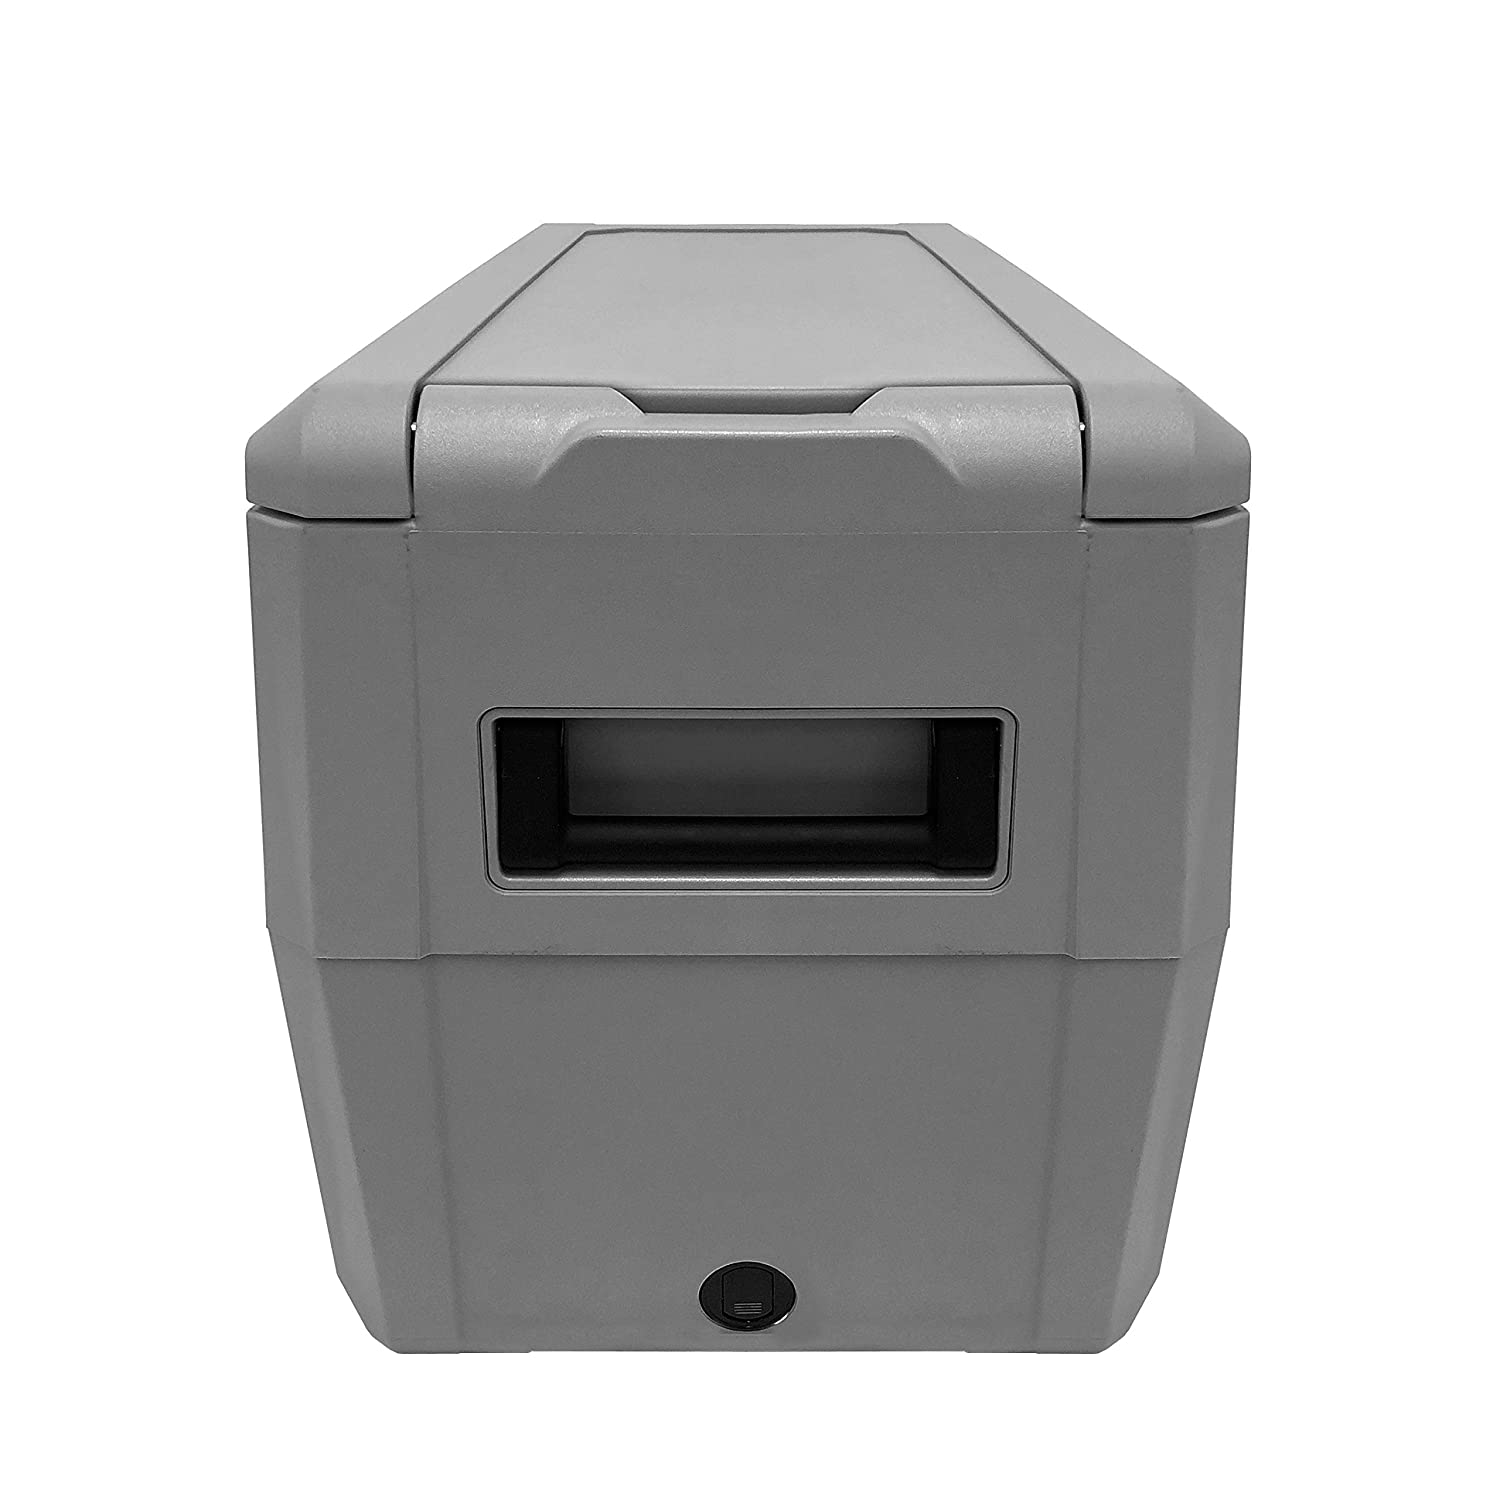 Photos - Freezer Whynter 34 Quart Compact Portable  Refrigerator with 12v DC Option,